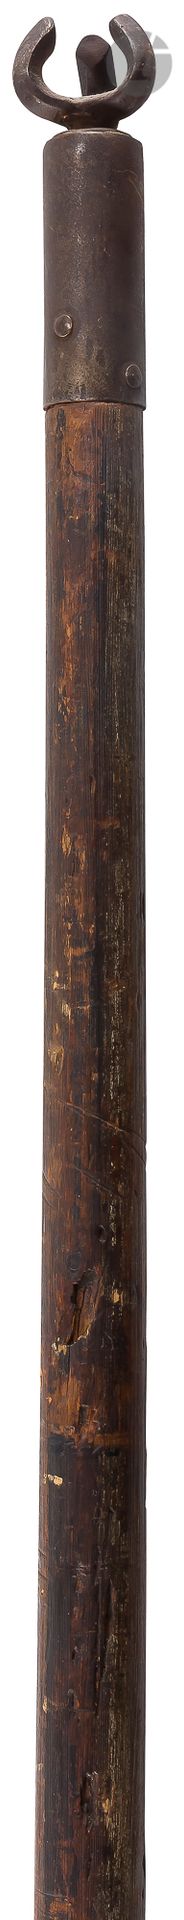 Null Lance de joute de style XVe siècle

En bois tourné. Croc en fer forgé. 

XI&hellip;